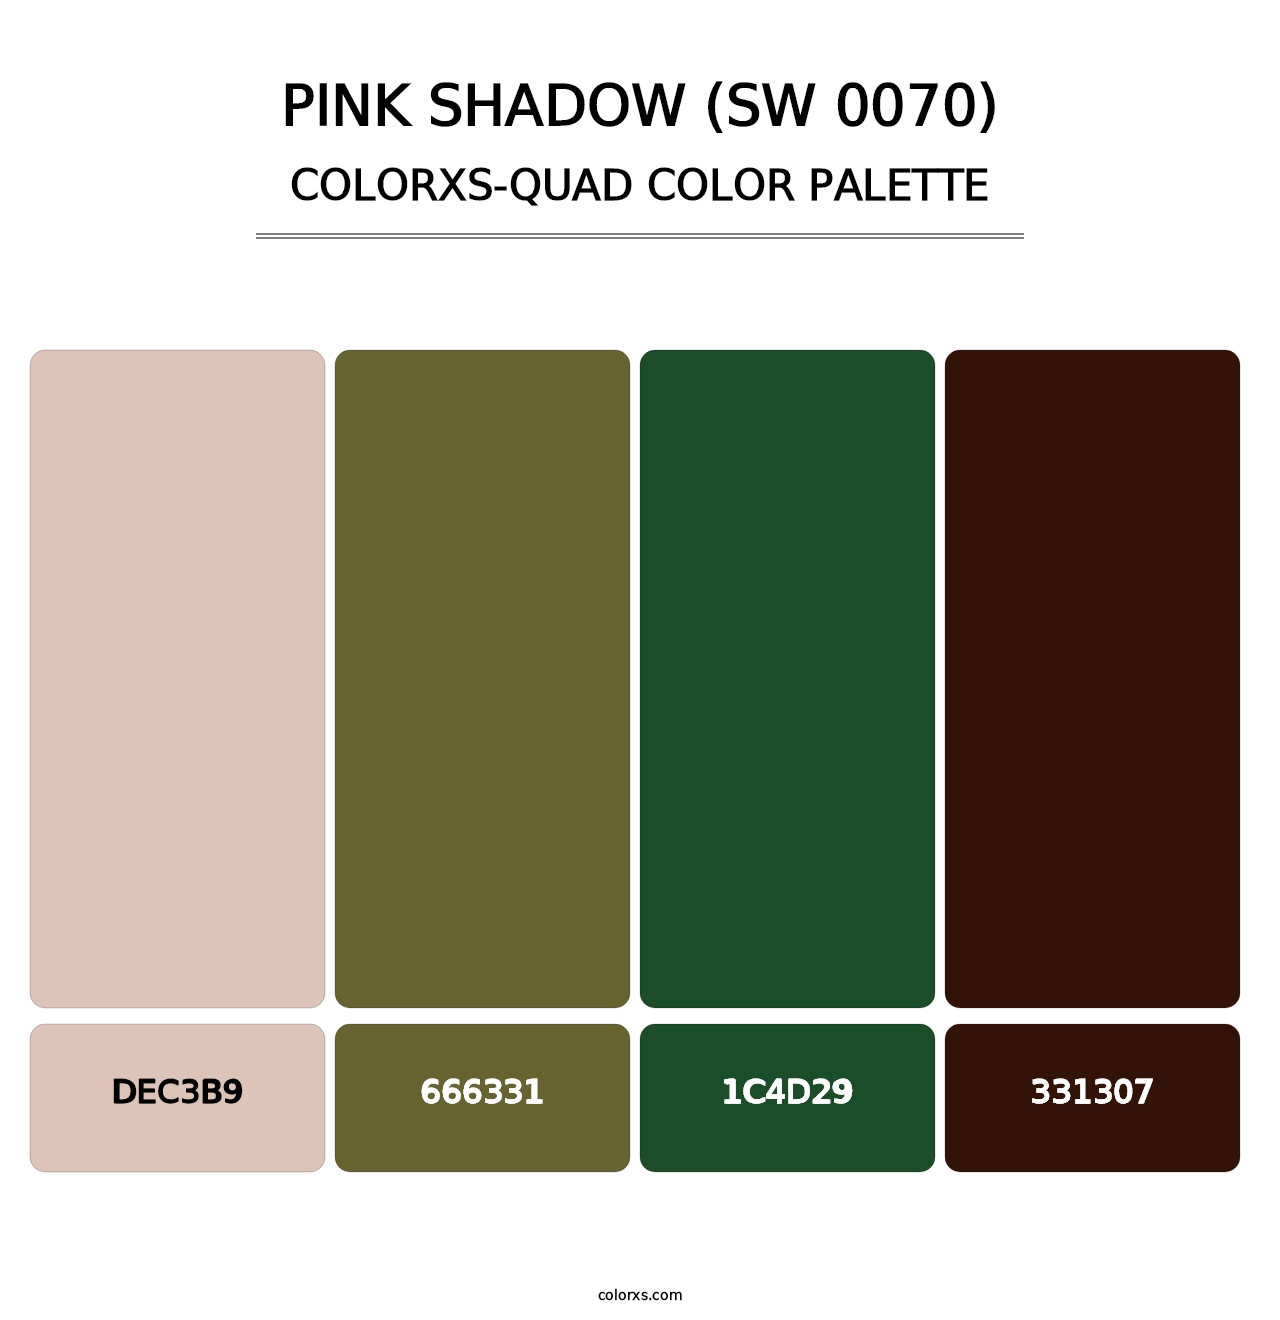 Pink Shadow (SW 0070) - Colorxs Quad Palette